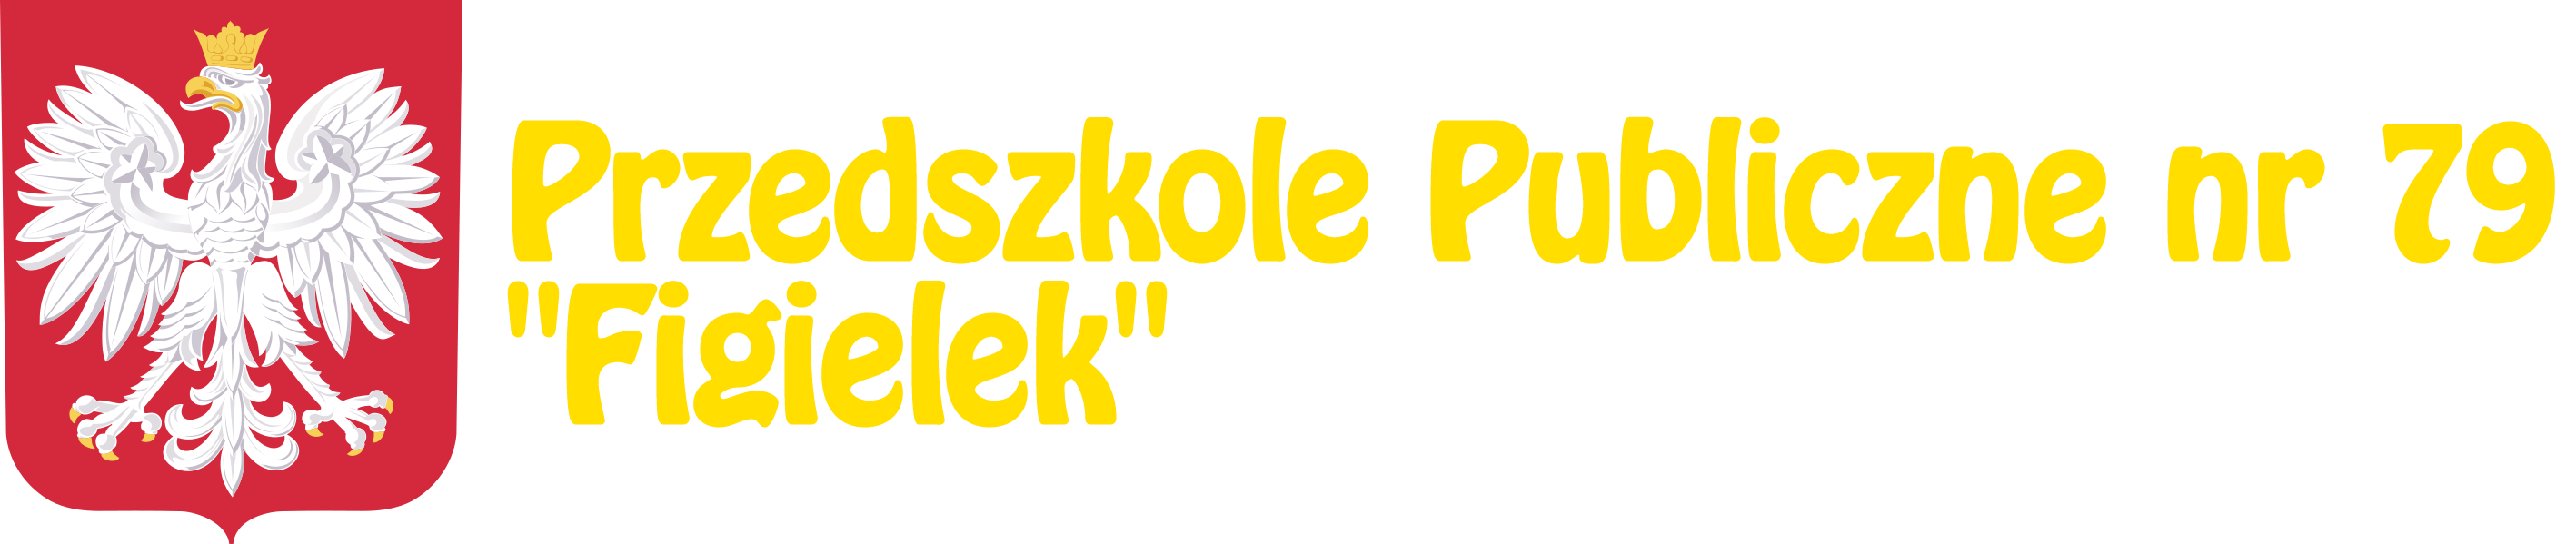 Przedszkole Publiczne Nr 79 w Szczecinie – Figielek